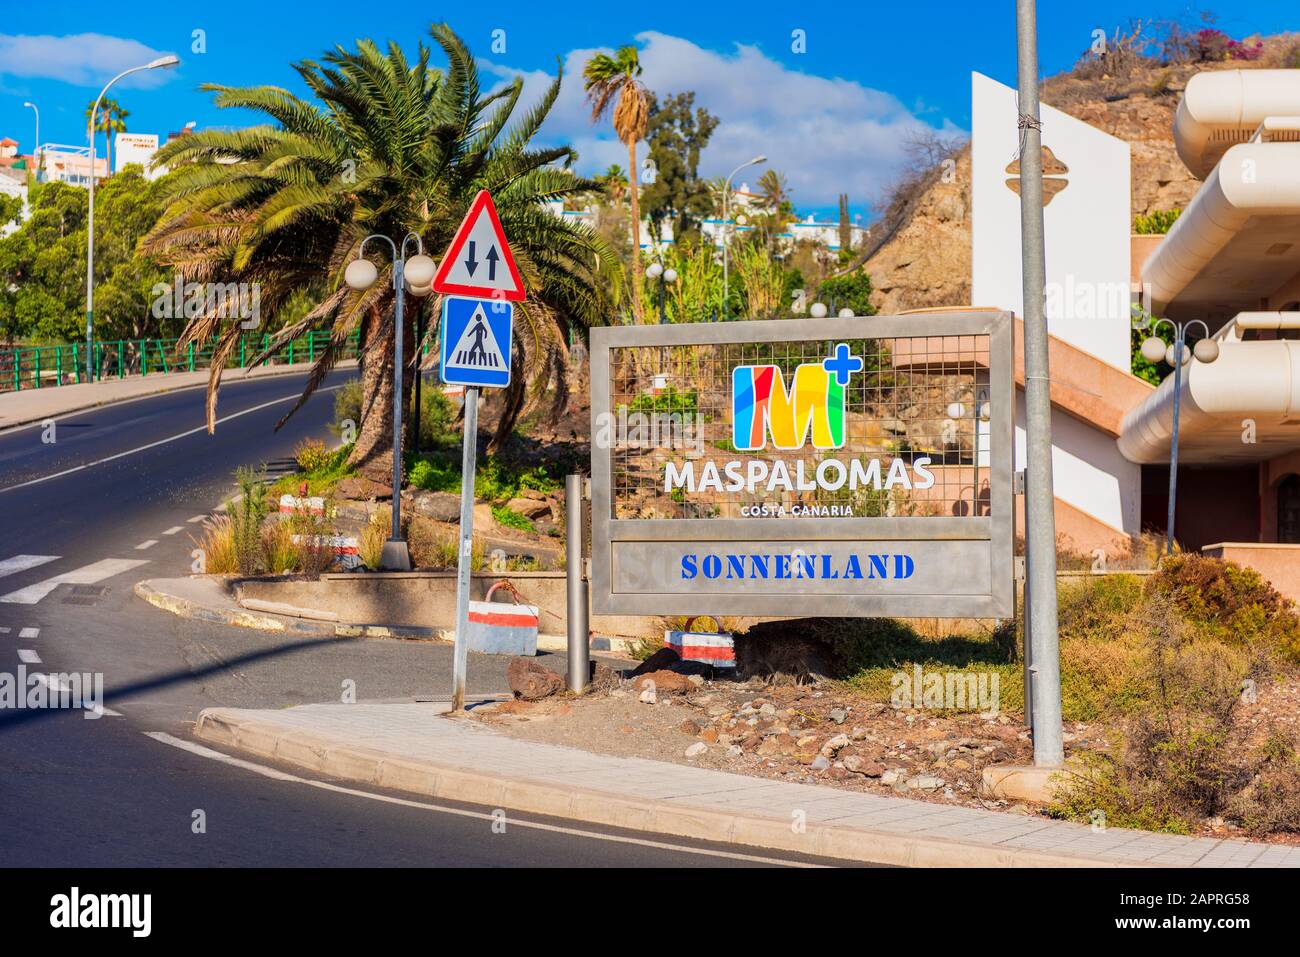 Eintrittszeichen für Sonnenland, Maspalomas, Gran Canaria, Kanarische Inseln, Spanien. Sonnenland ist ein Stadtviertel in Maspalomas, einem wichtigen Touristenziel Stockfoto